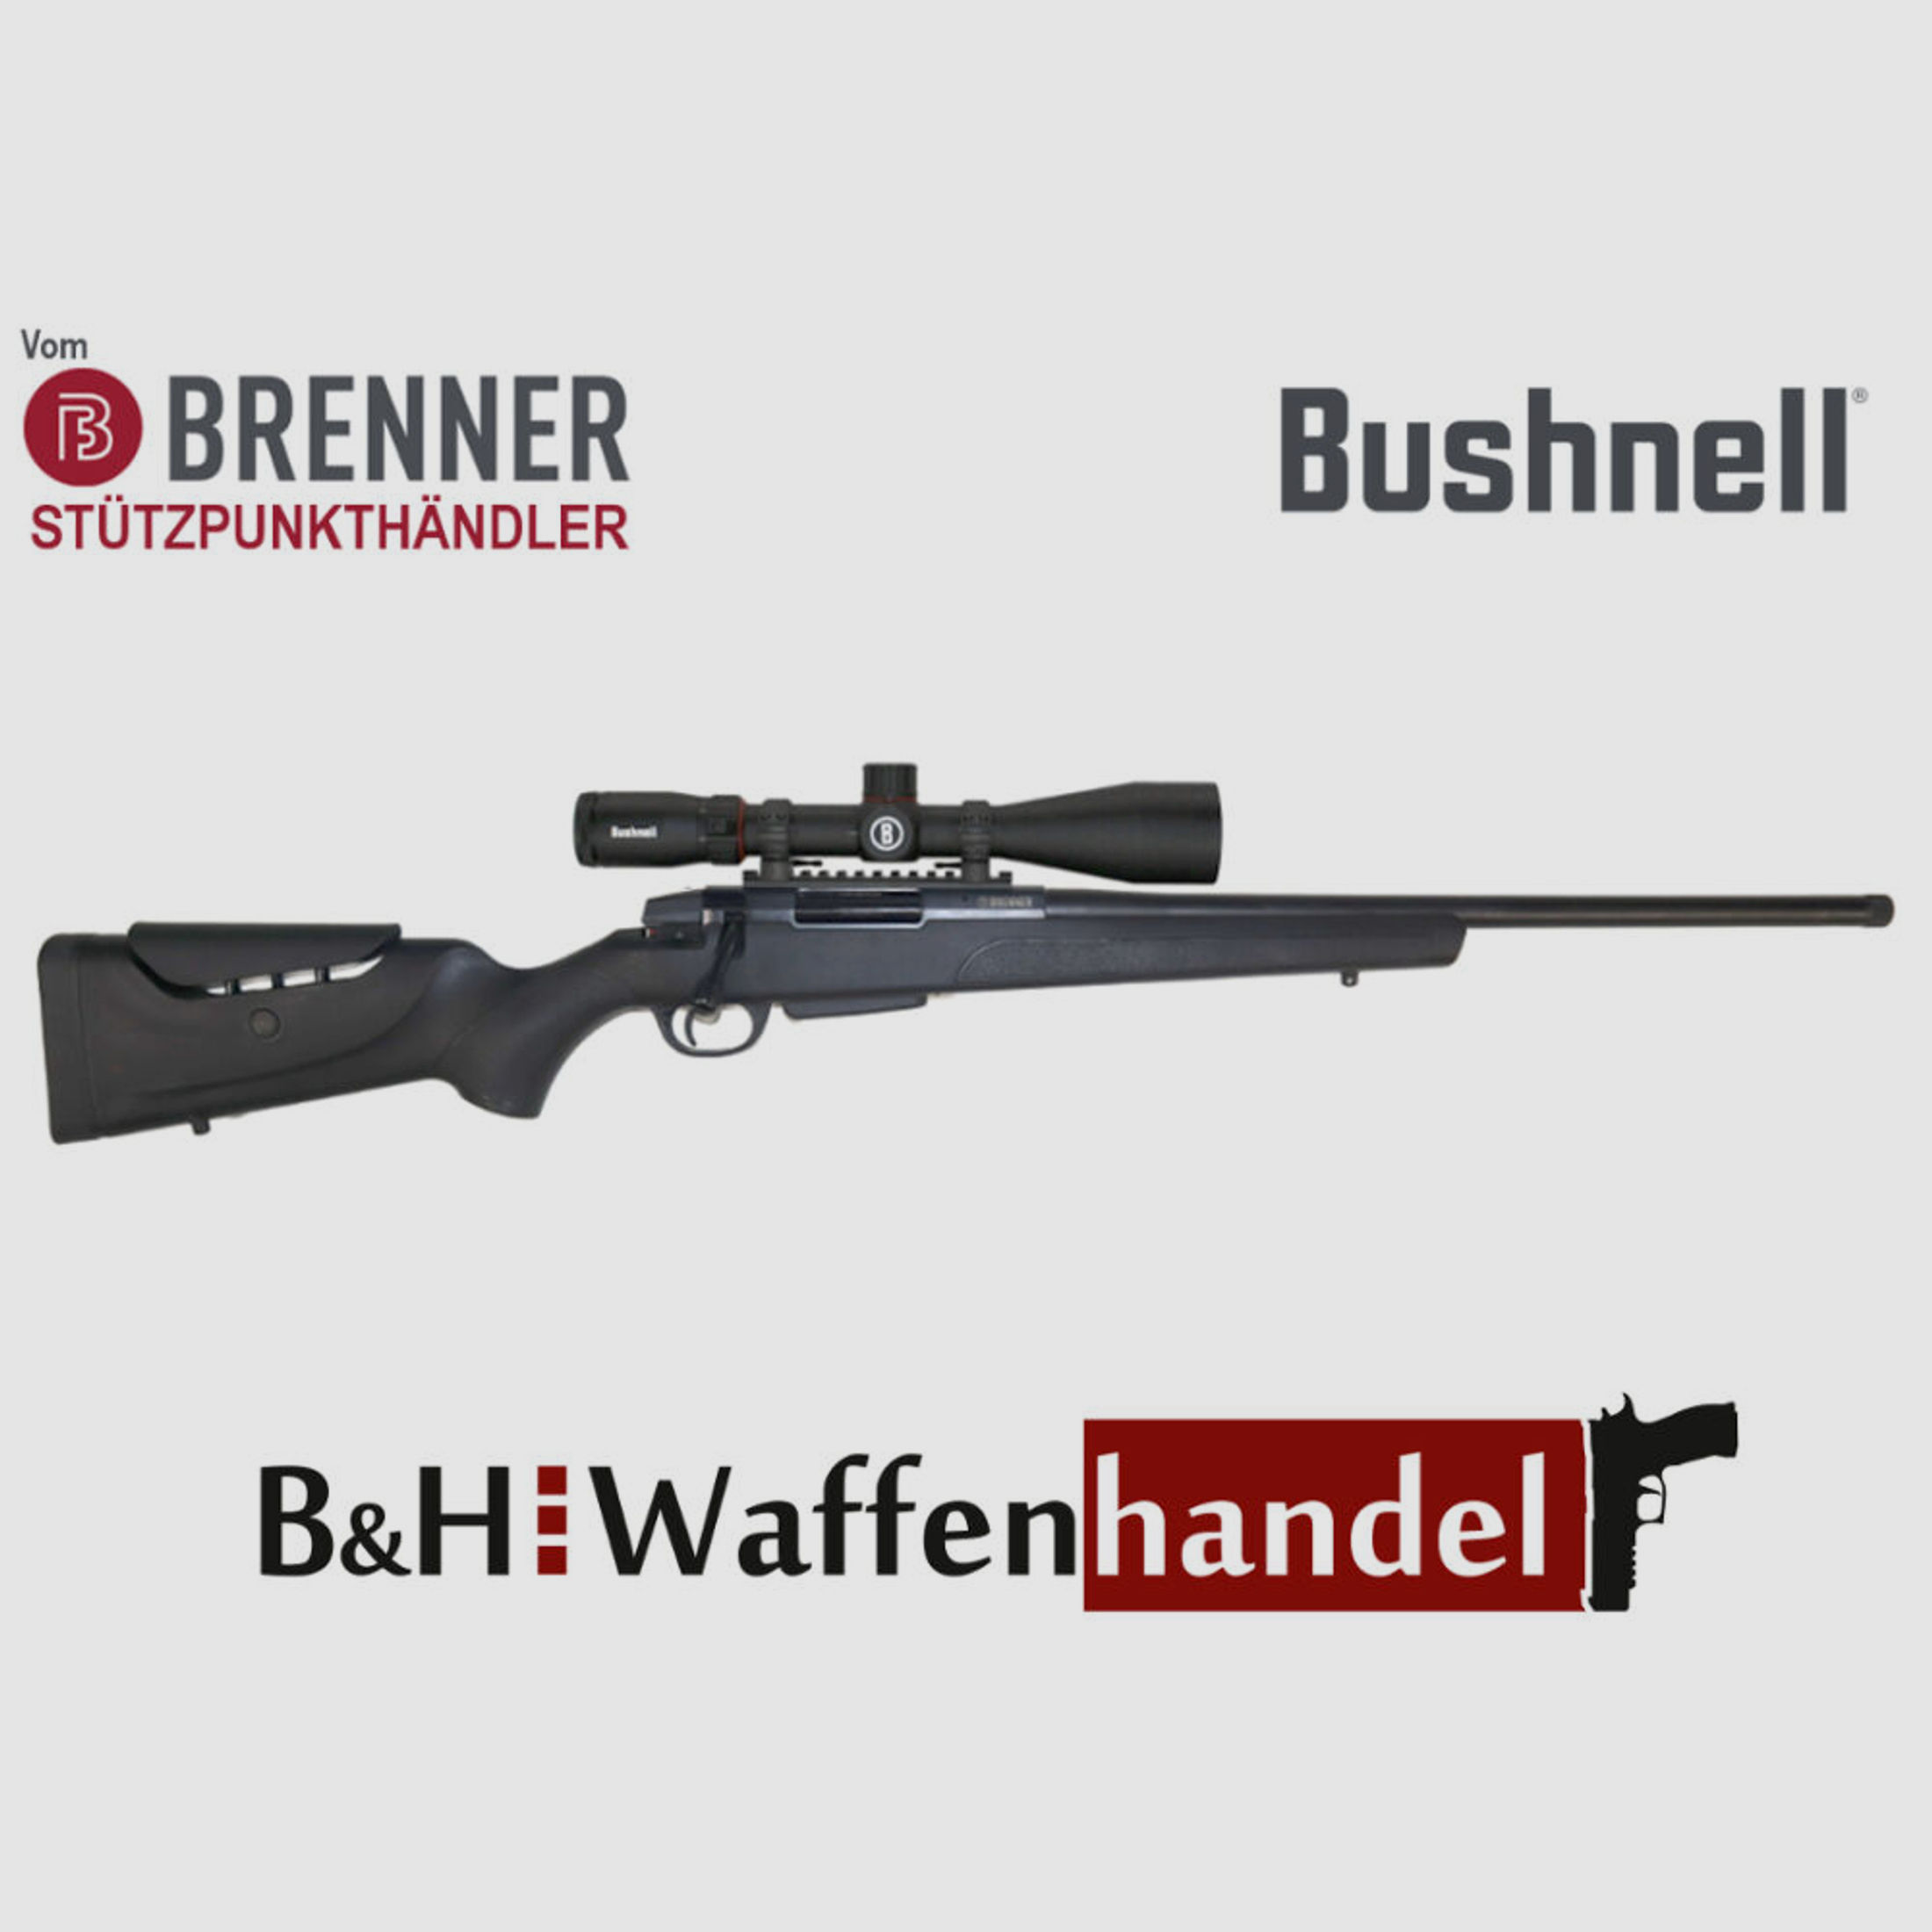 Brenner Komplettpaket:	 Brenner BR 20 Polymer schwarz mit ZF Bushnell 2.5-15x50 (m. Parallaxe Verstellung)